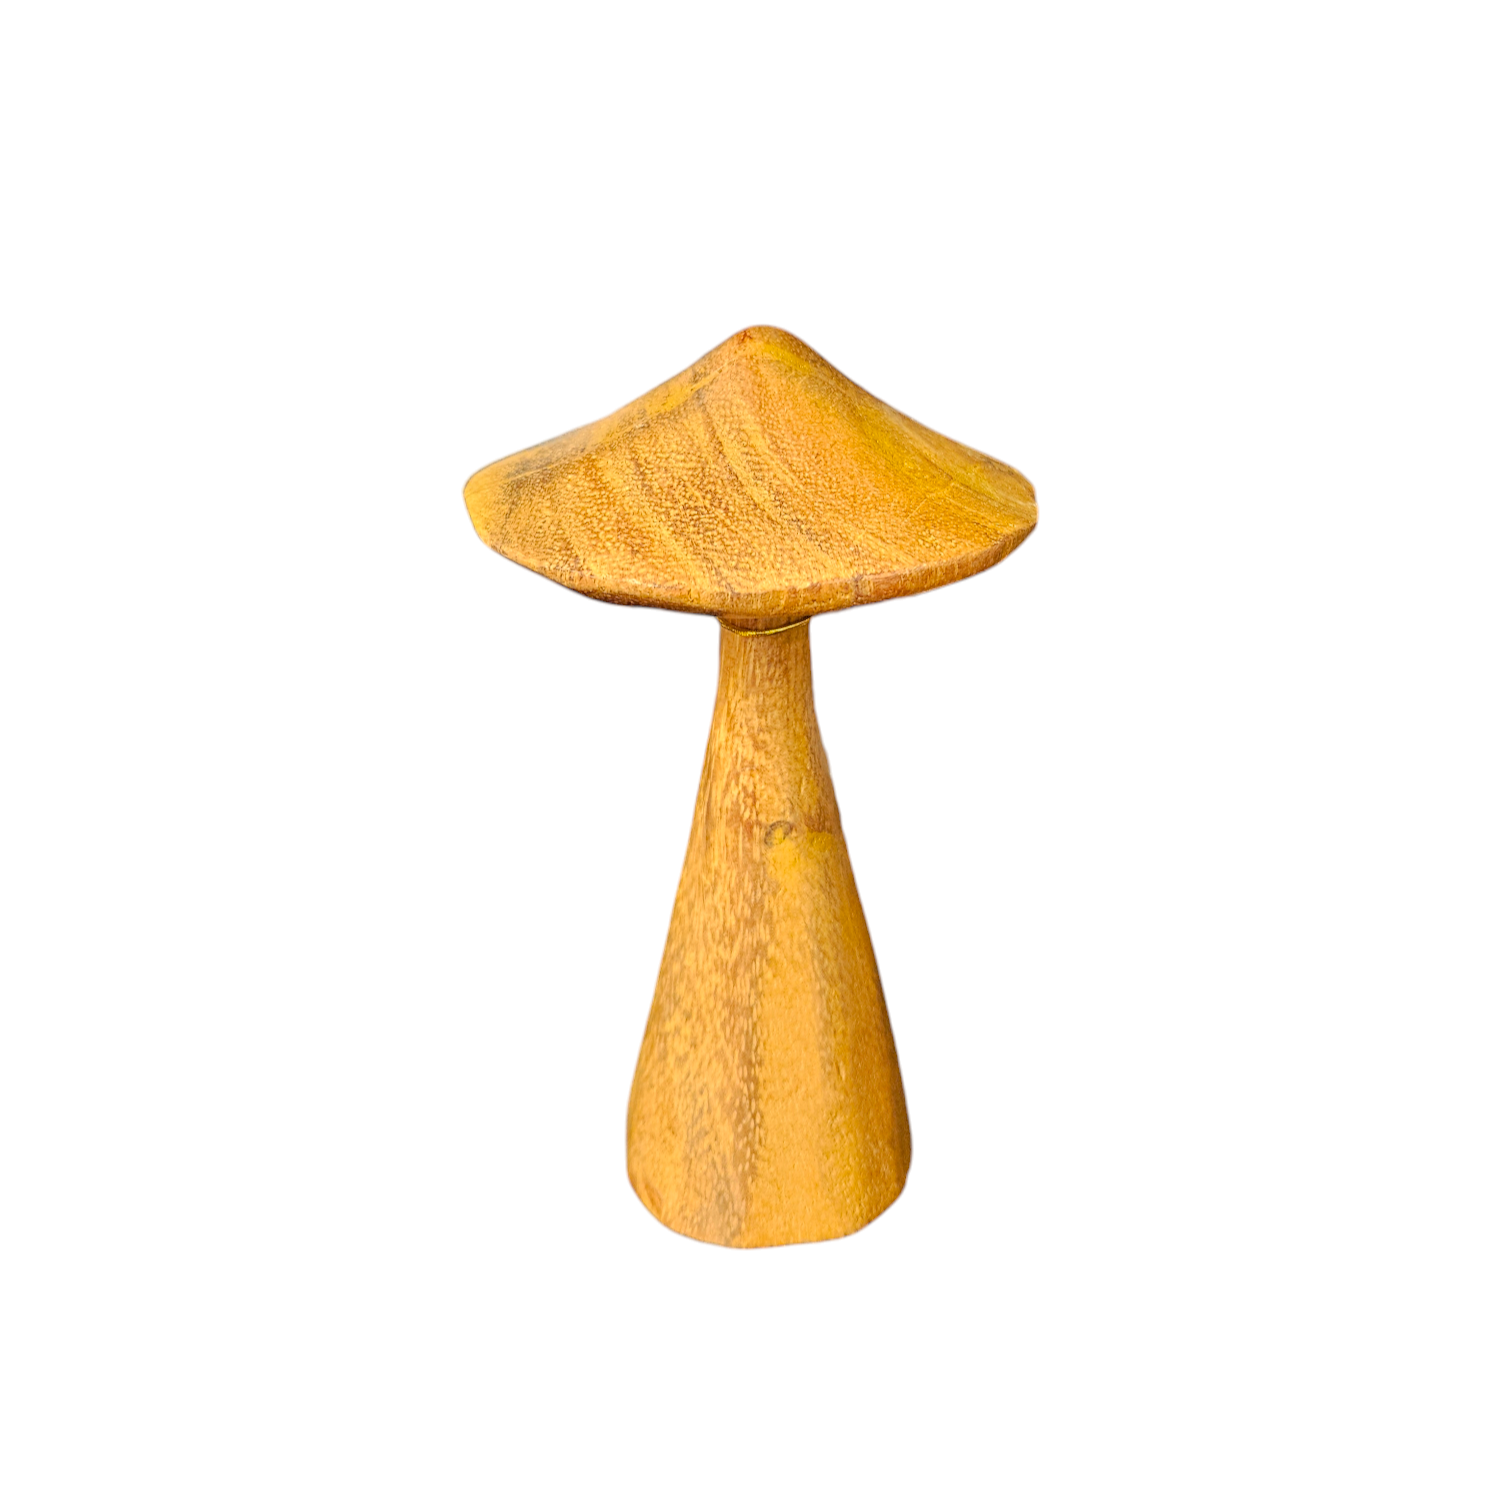 Carved Wood Mushroom